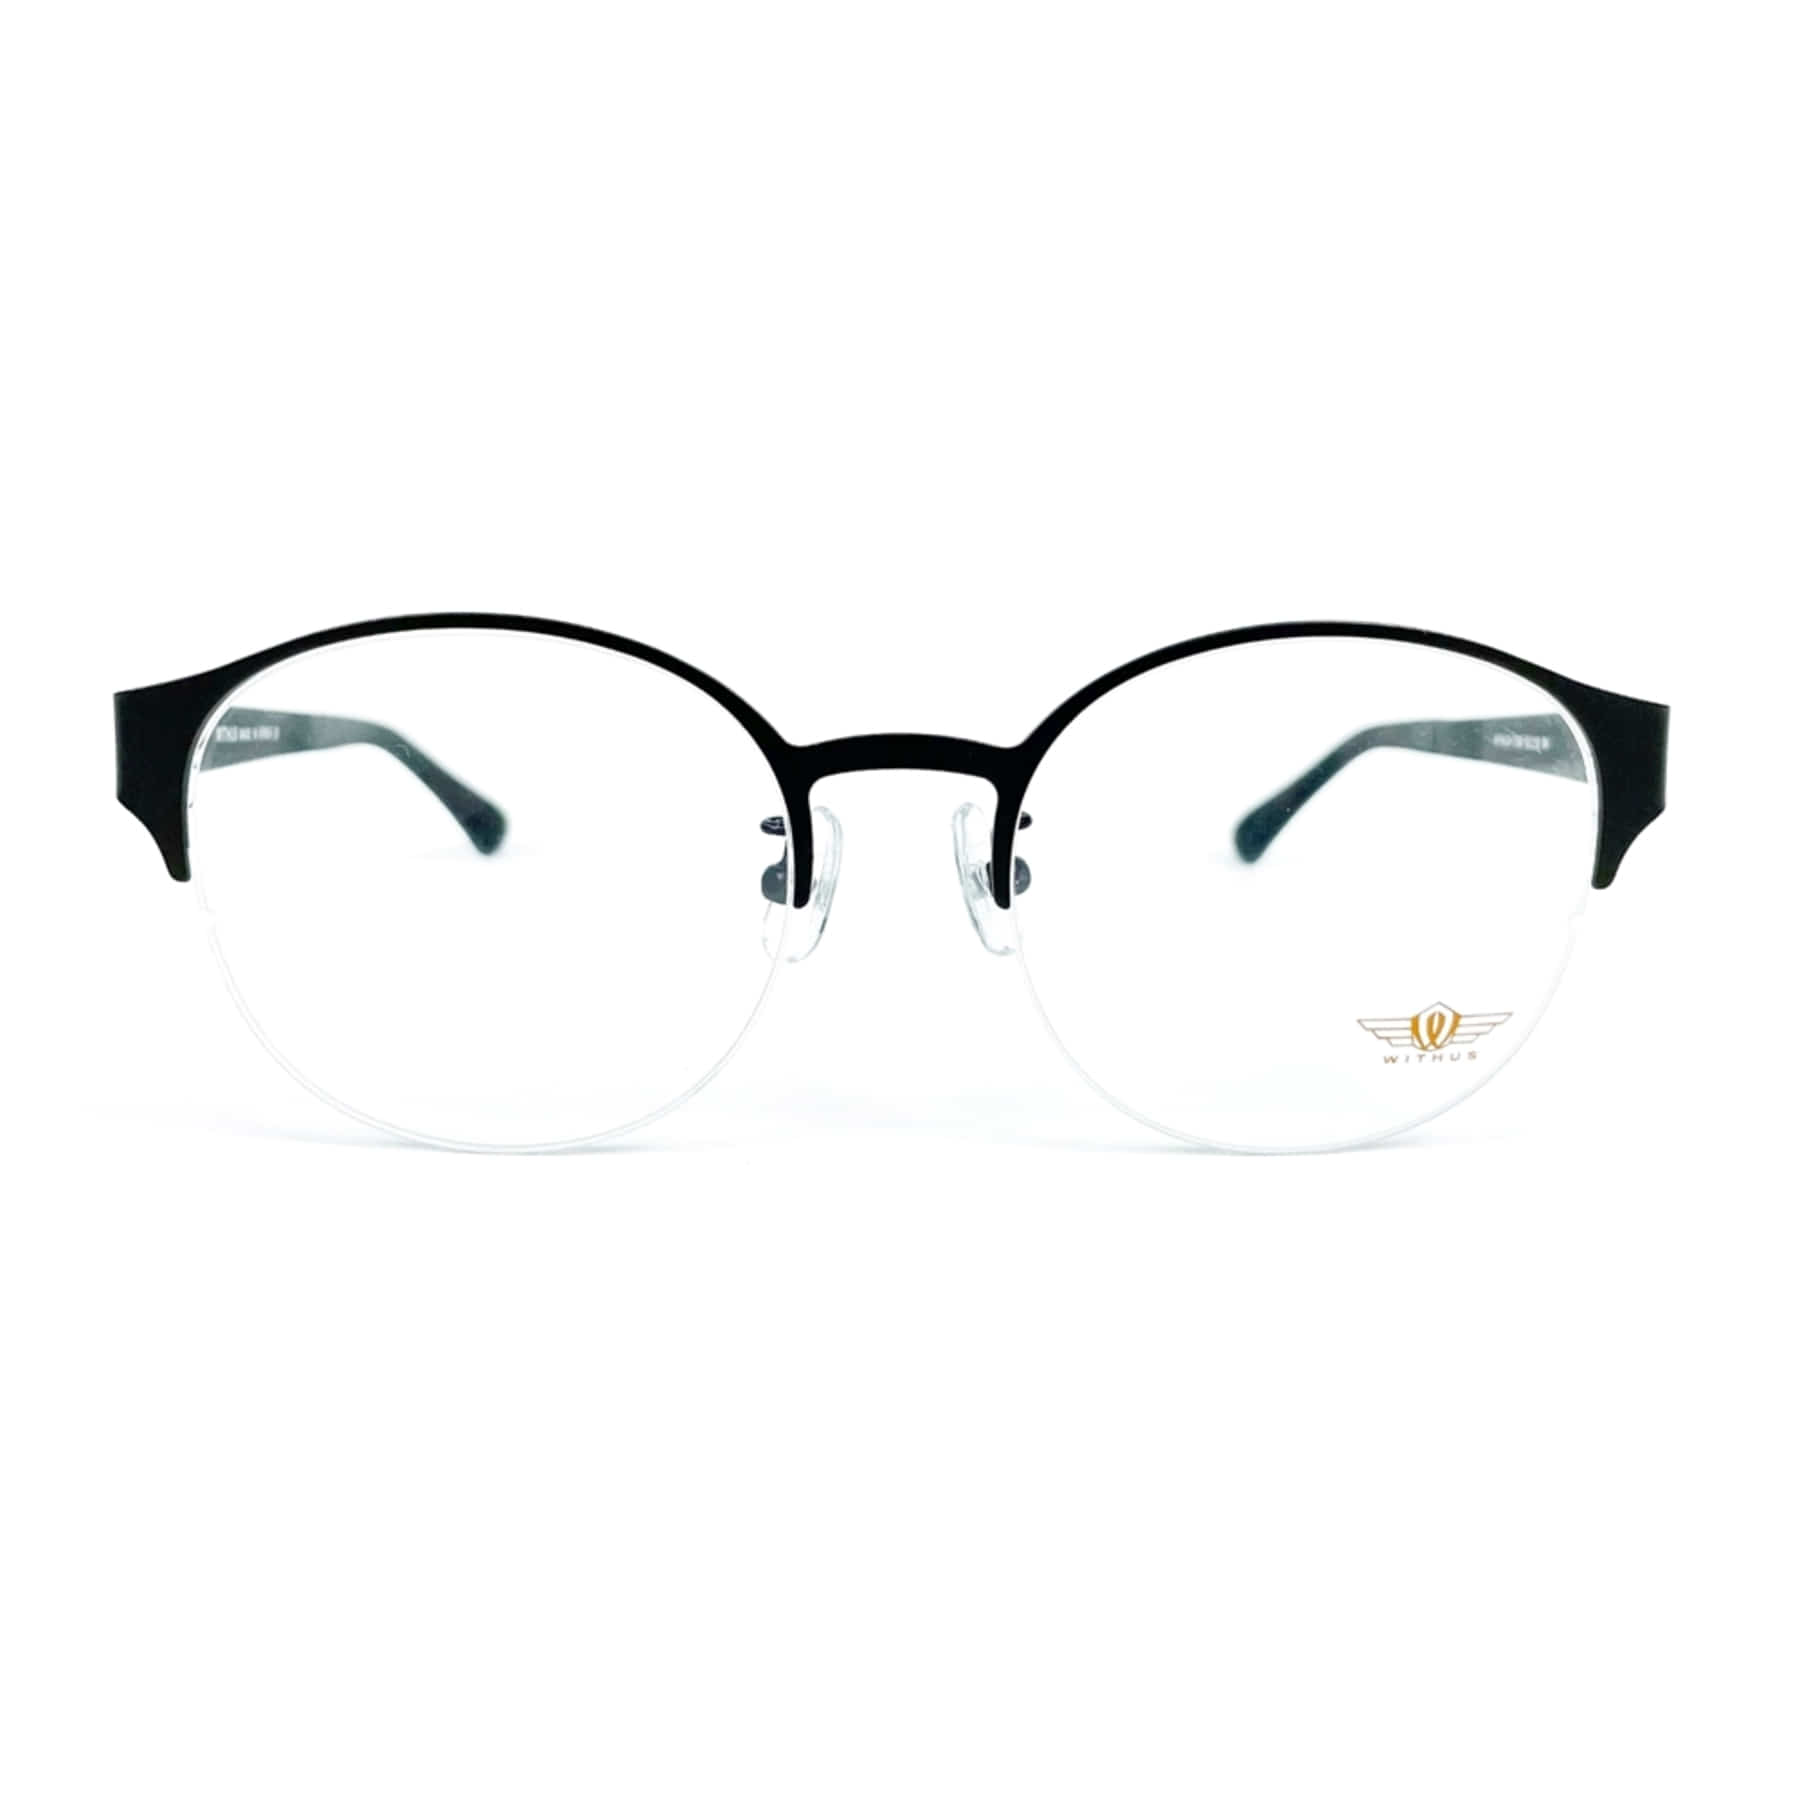 WITHUS-7269, Korean glasses, sunglasses, eyeglasses, glasses